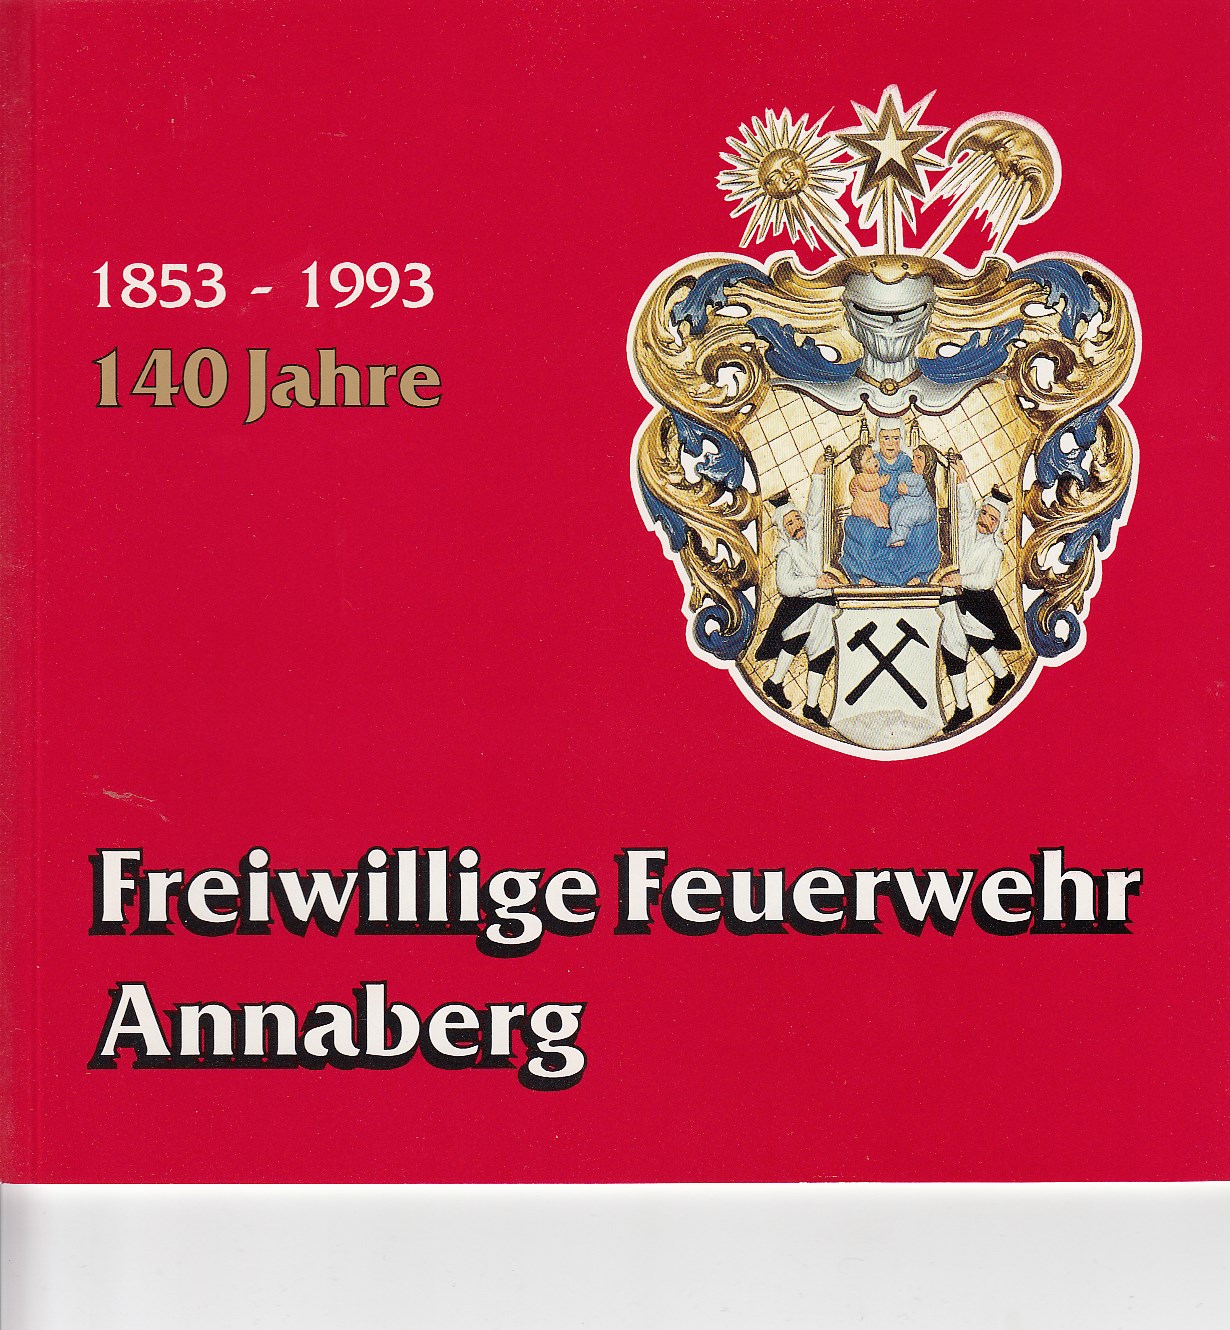 Panzer, Jrgen, R. Schimmel und H. Vetter:  Festschrift zum 140-jhrigen Jubilum der Freiwilligen Feuerwehr Annaberg 